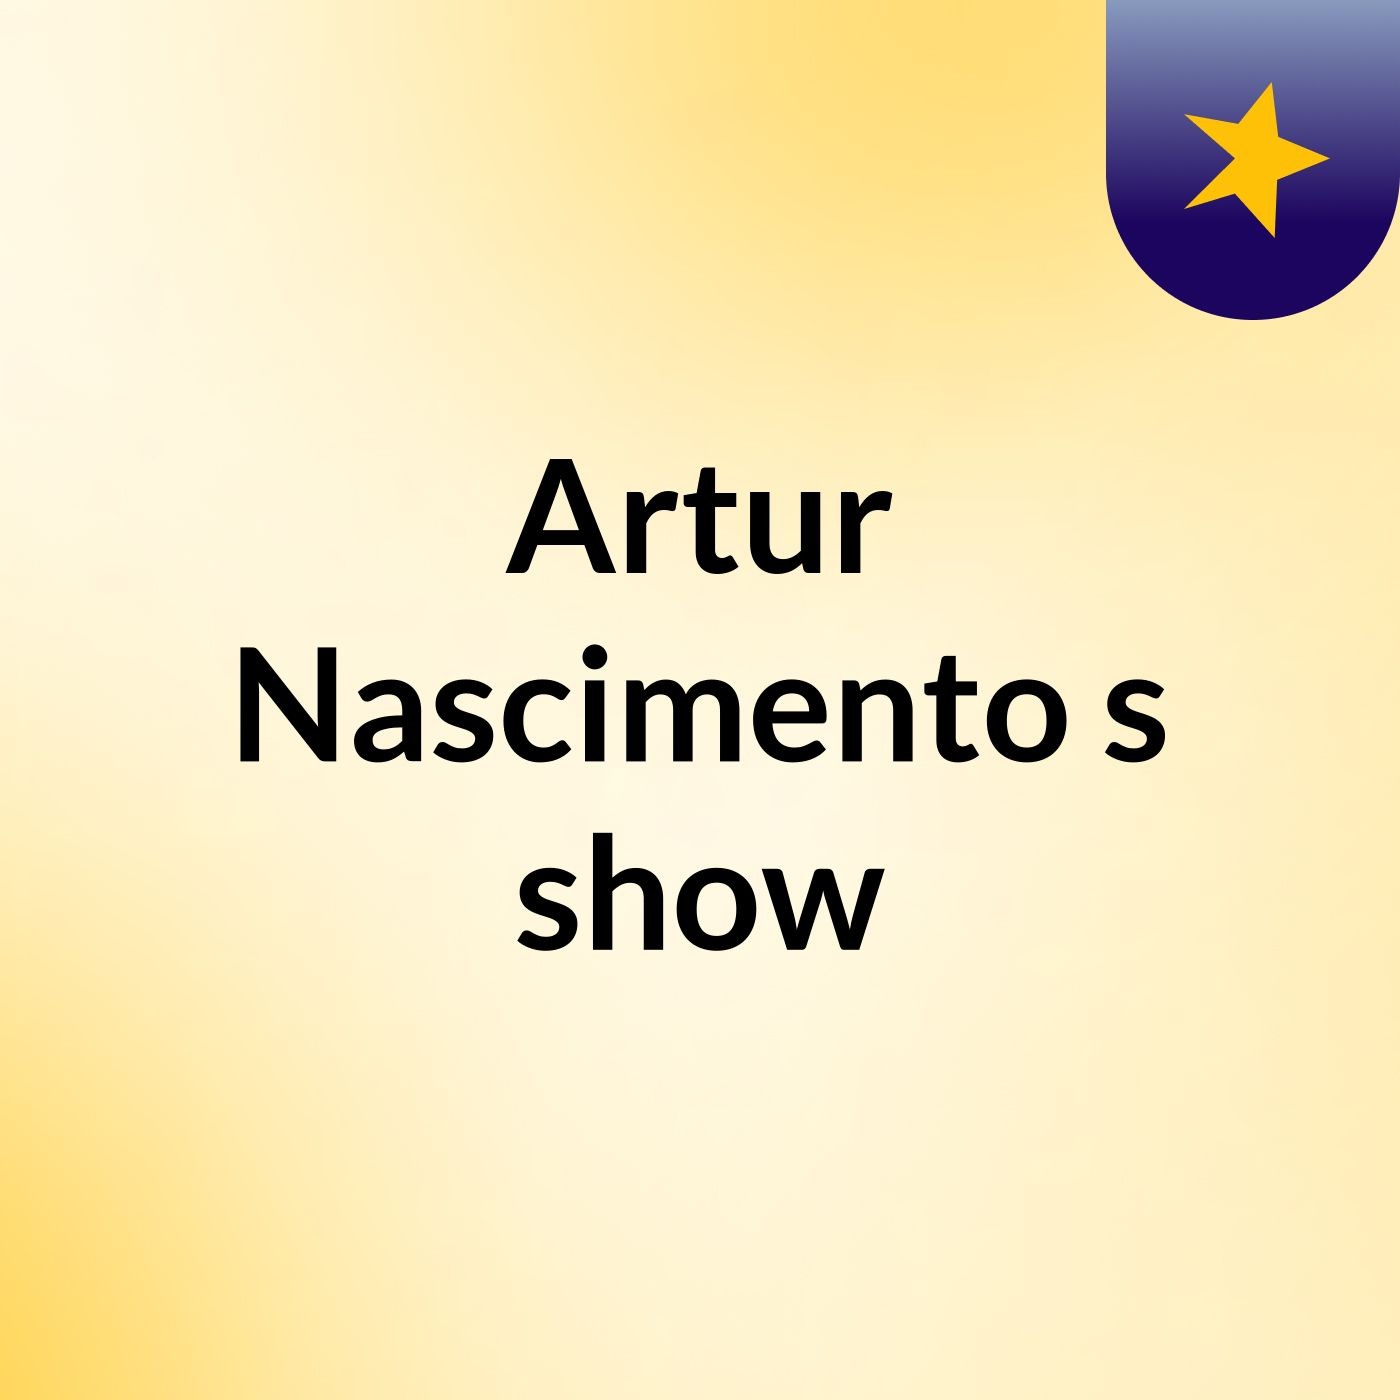 Artur Nascimento's show